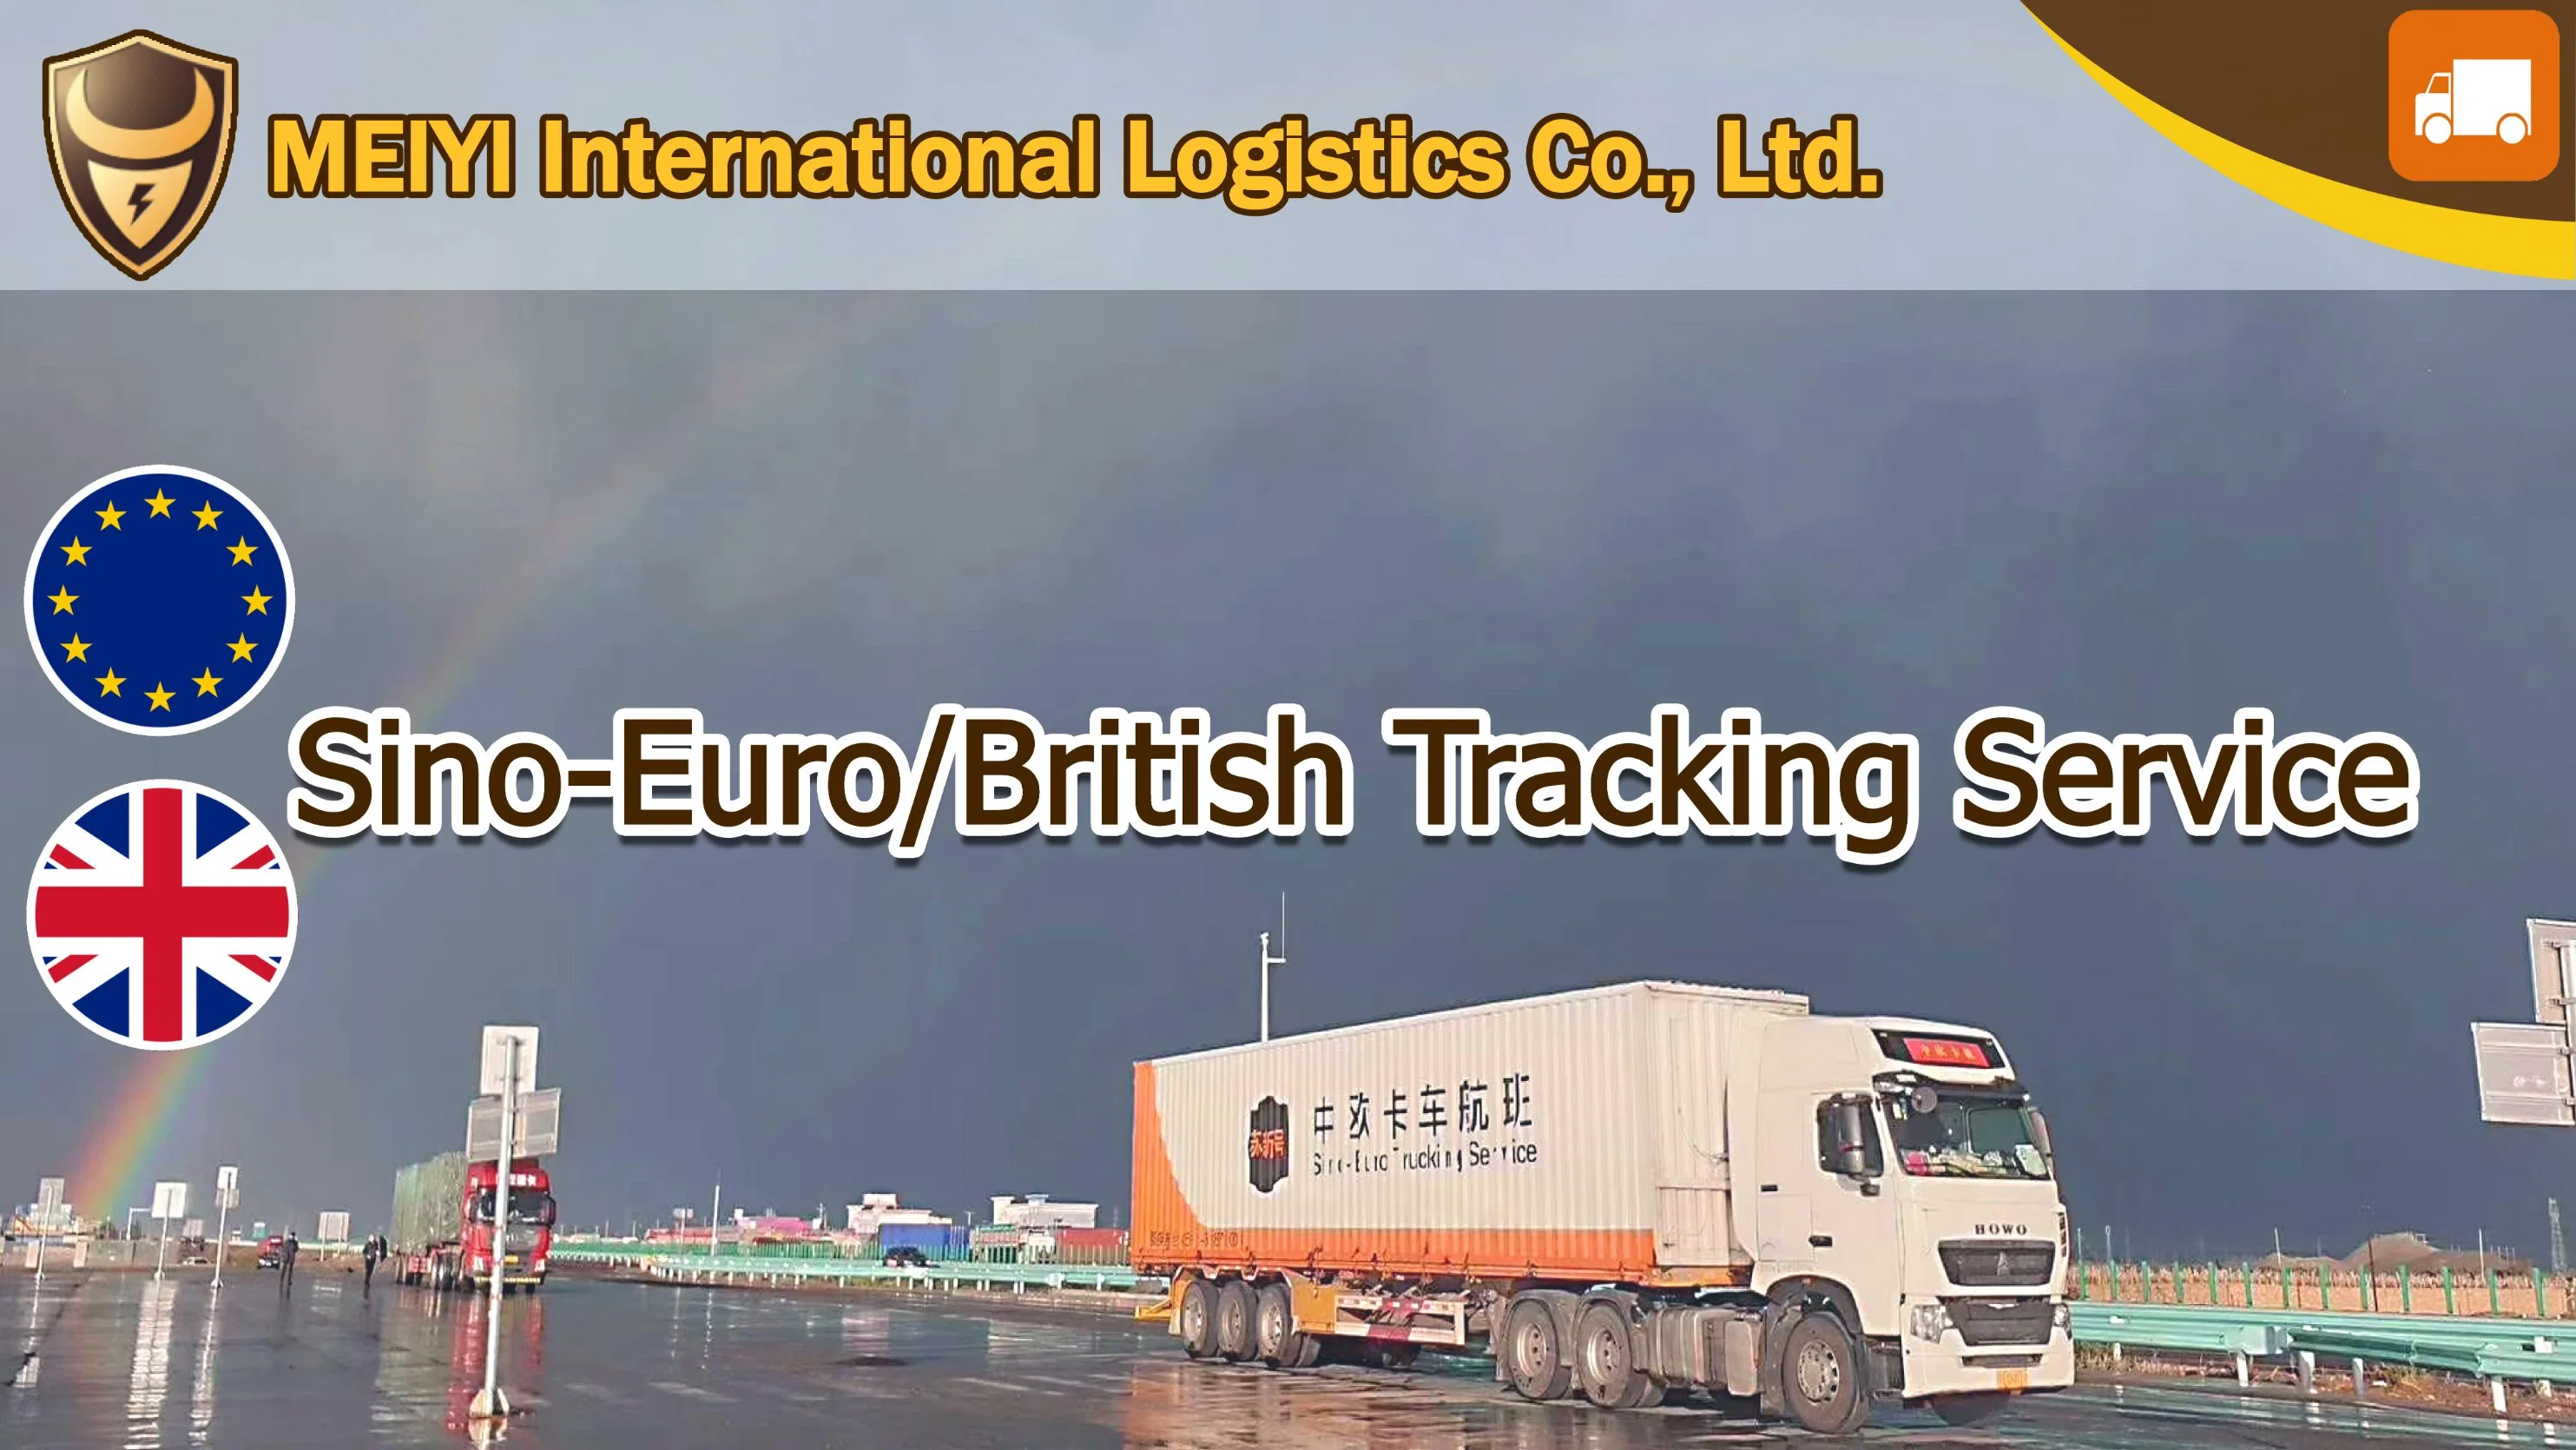 Melhor, mais rápido e mais barato de camionagem Sino-Euro Shipping Company envio para a Alemanha